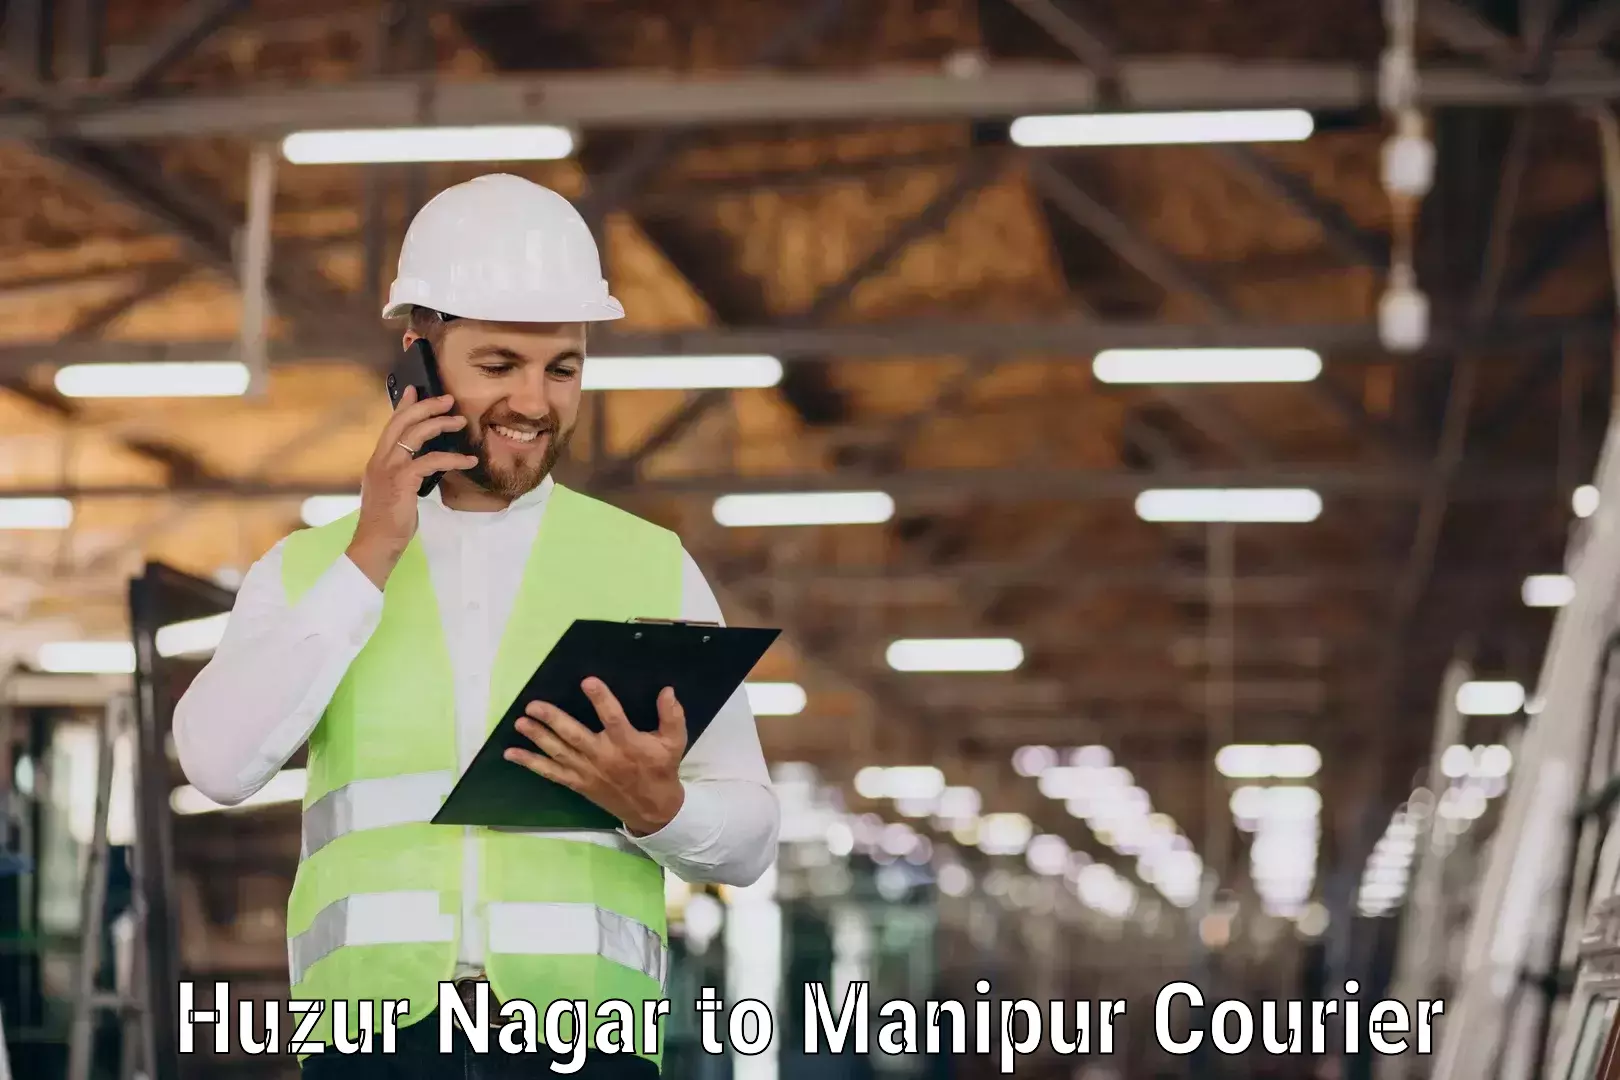 Courier service comparison Huzur Nagar to Manipur